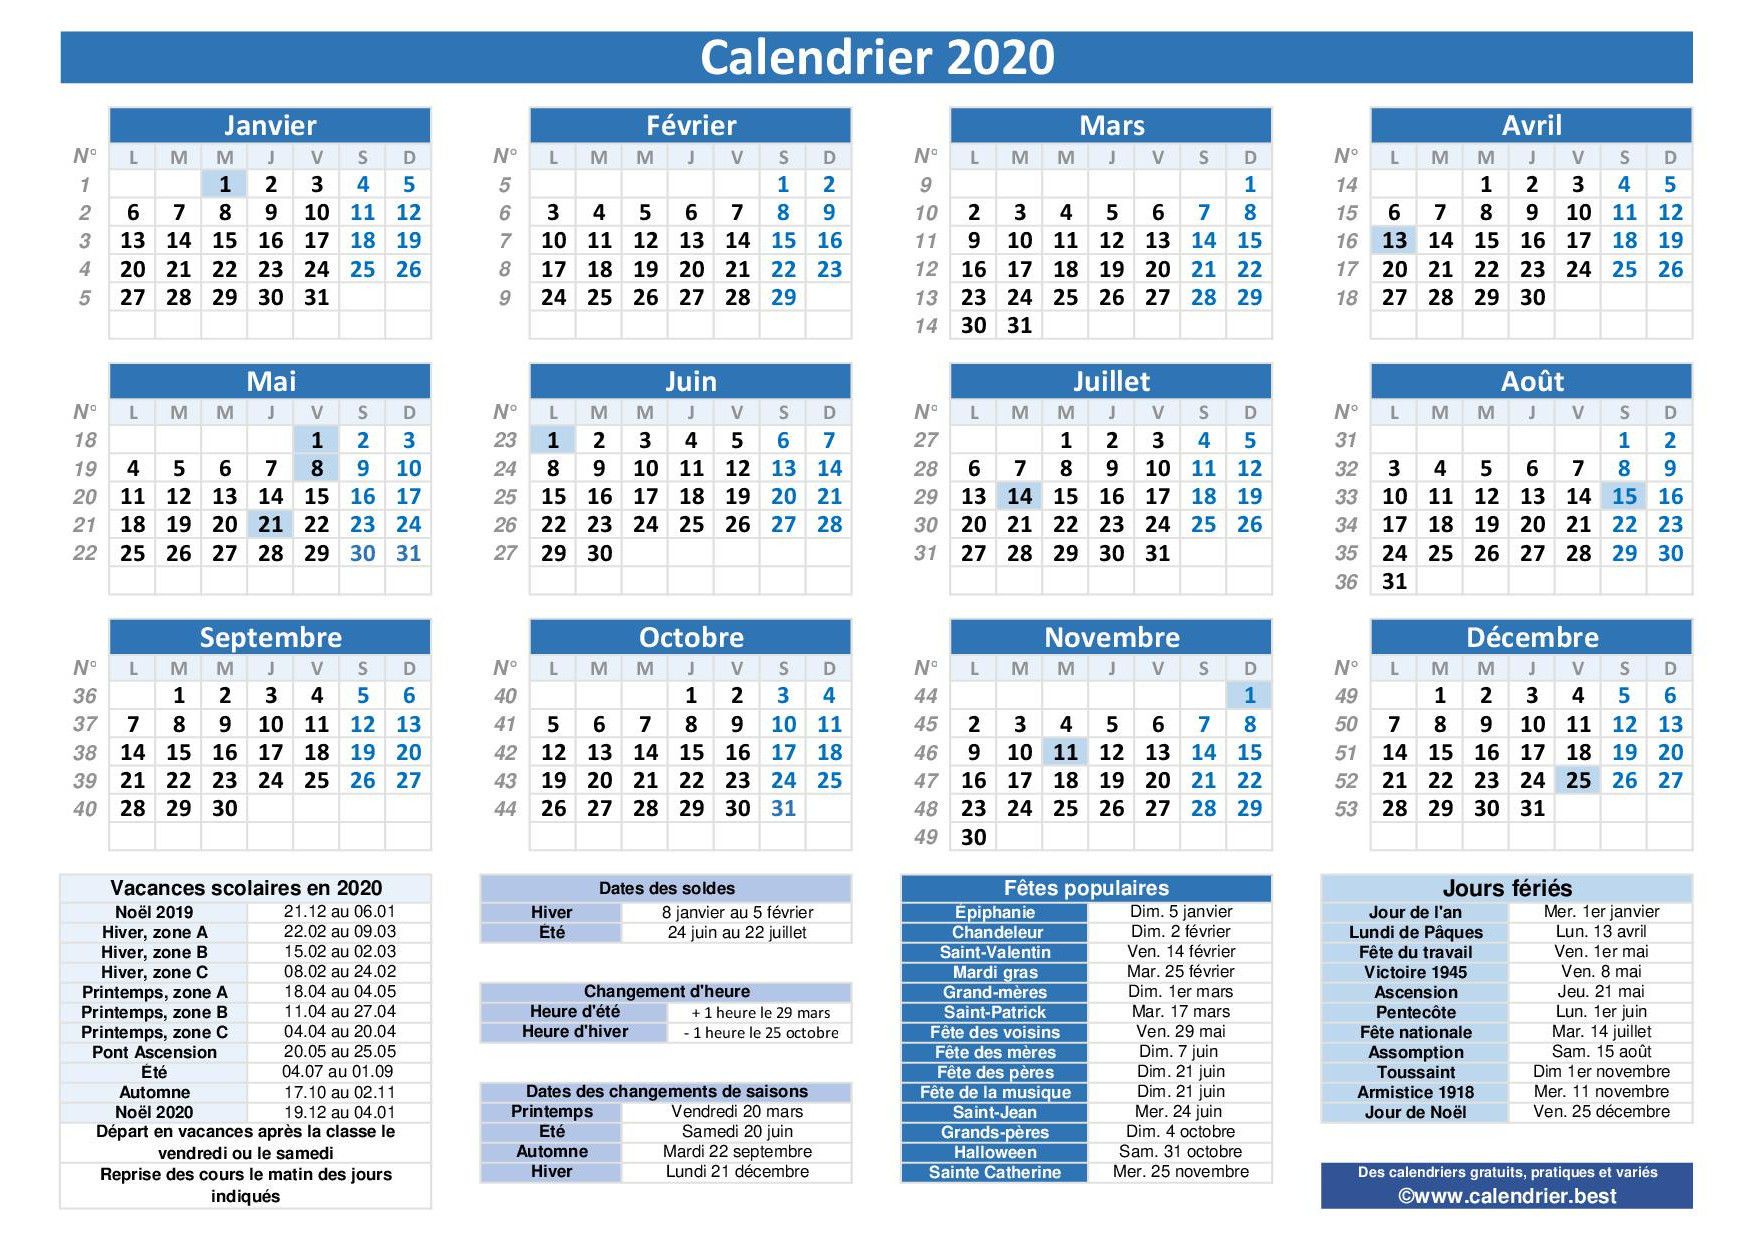 Calendrier Numéro De Semaine 2021 Calendrier 2020 avec jours fériés et dates utiles à imprimer 